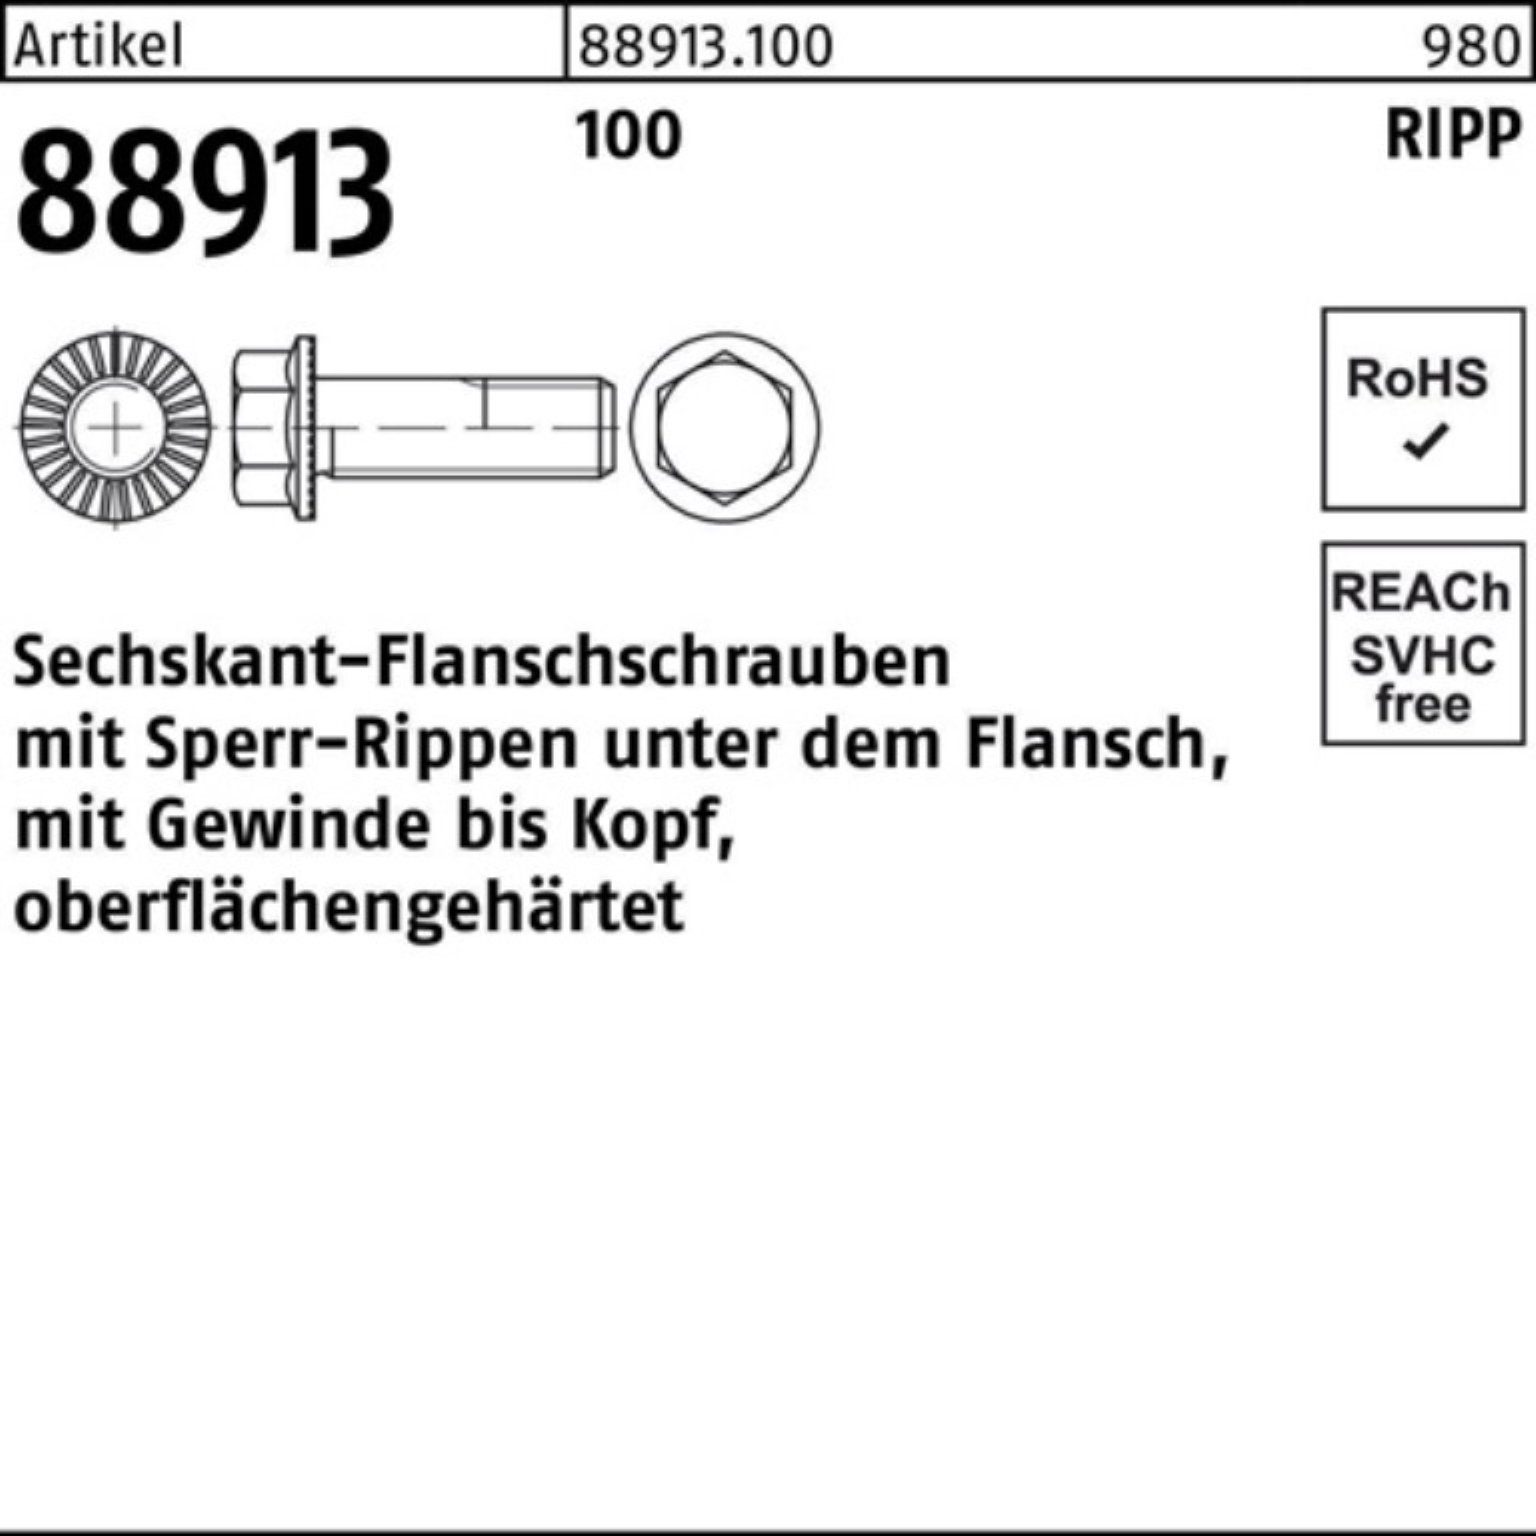 M12x Sperr-Ripp R 100 Pack 100er 88913 Reyher Sechskantflanschschraube VG 20 Schraube